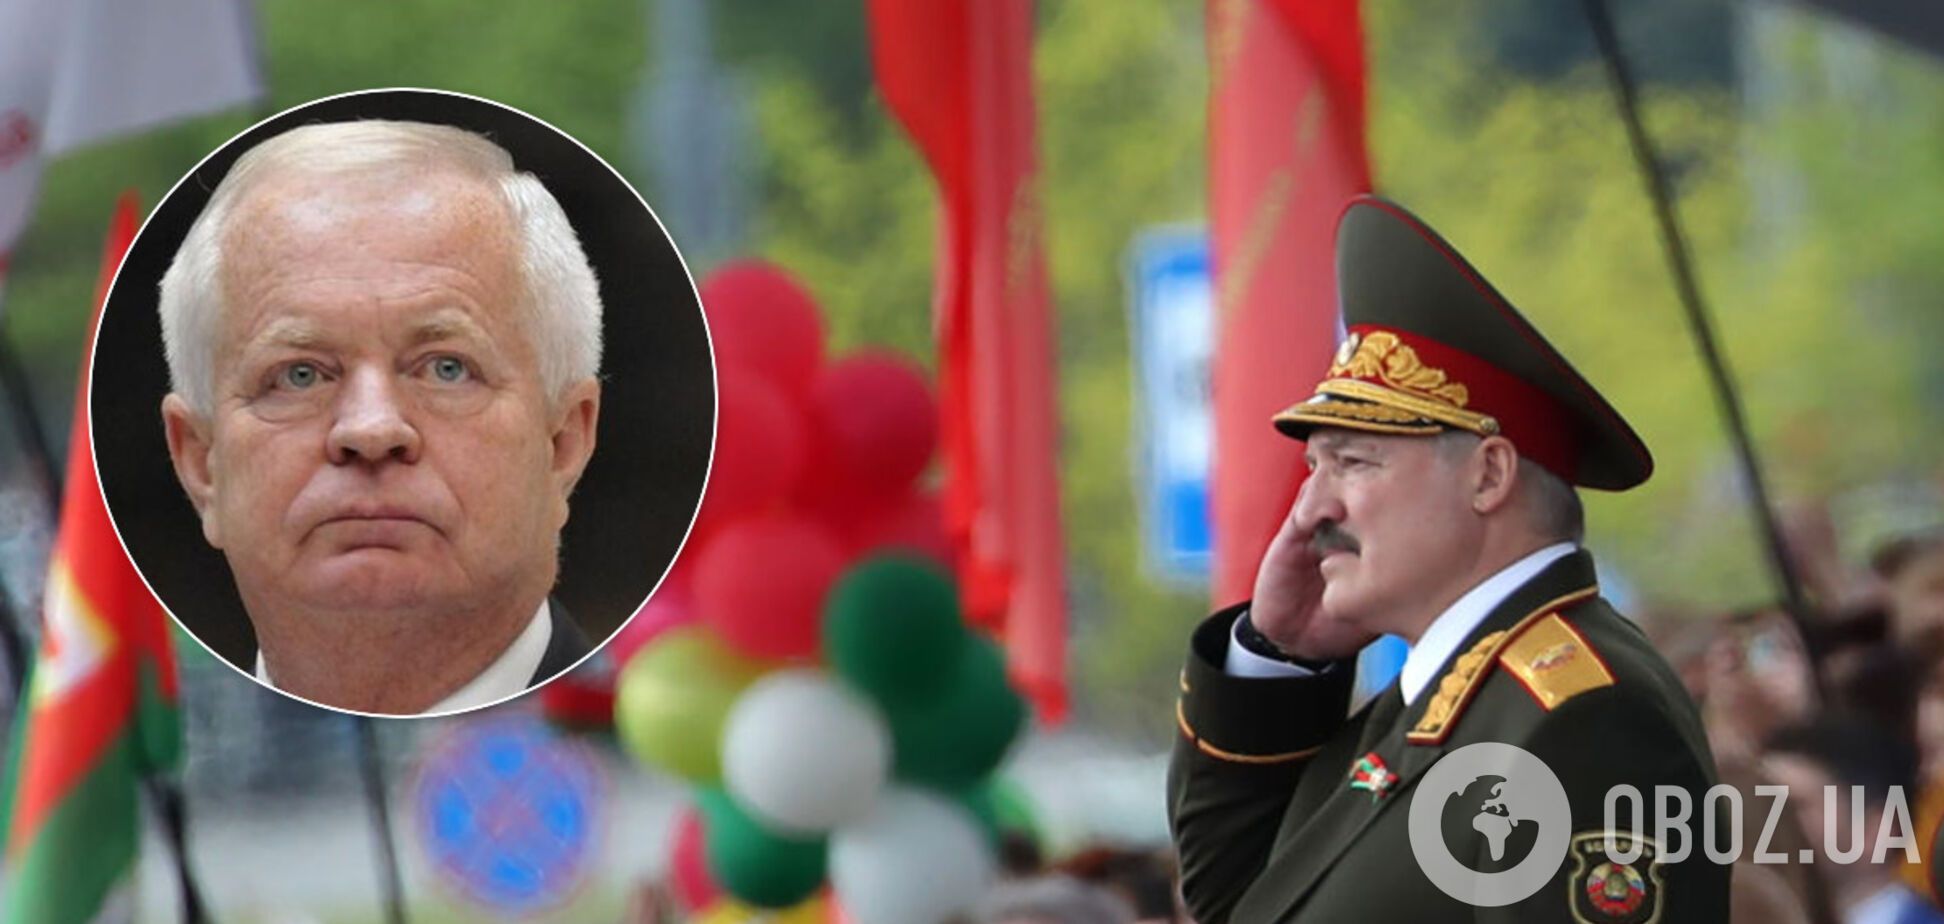 'Син партизана': посол Словаччини позбувся посади після параду Лукашенка на 9 травня